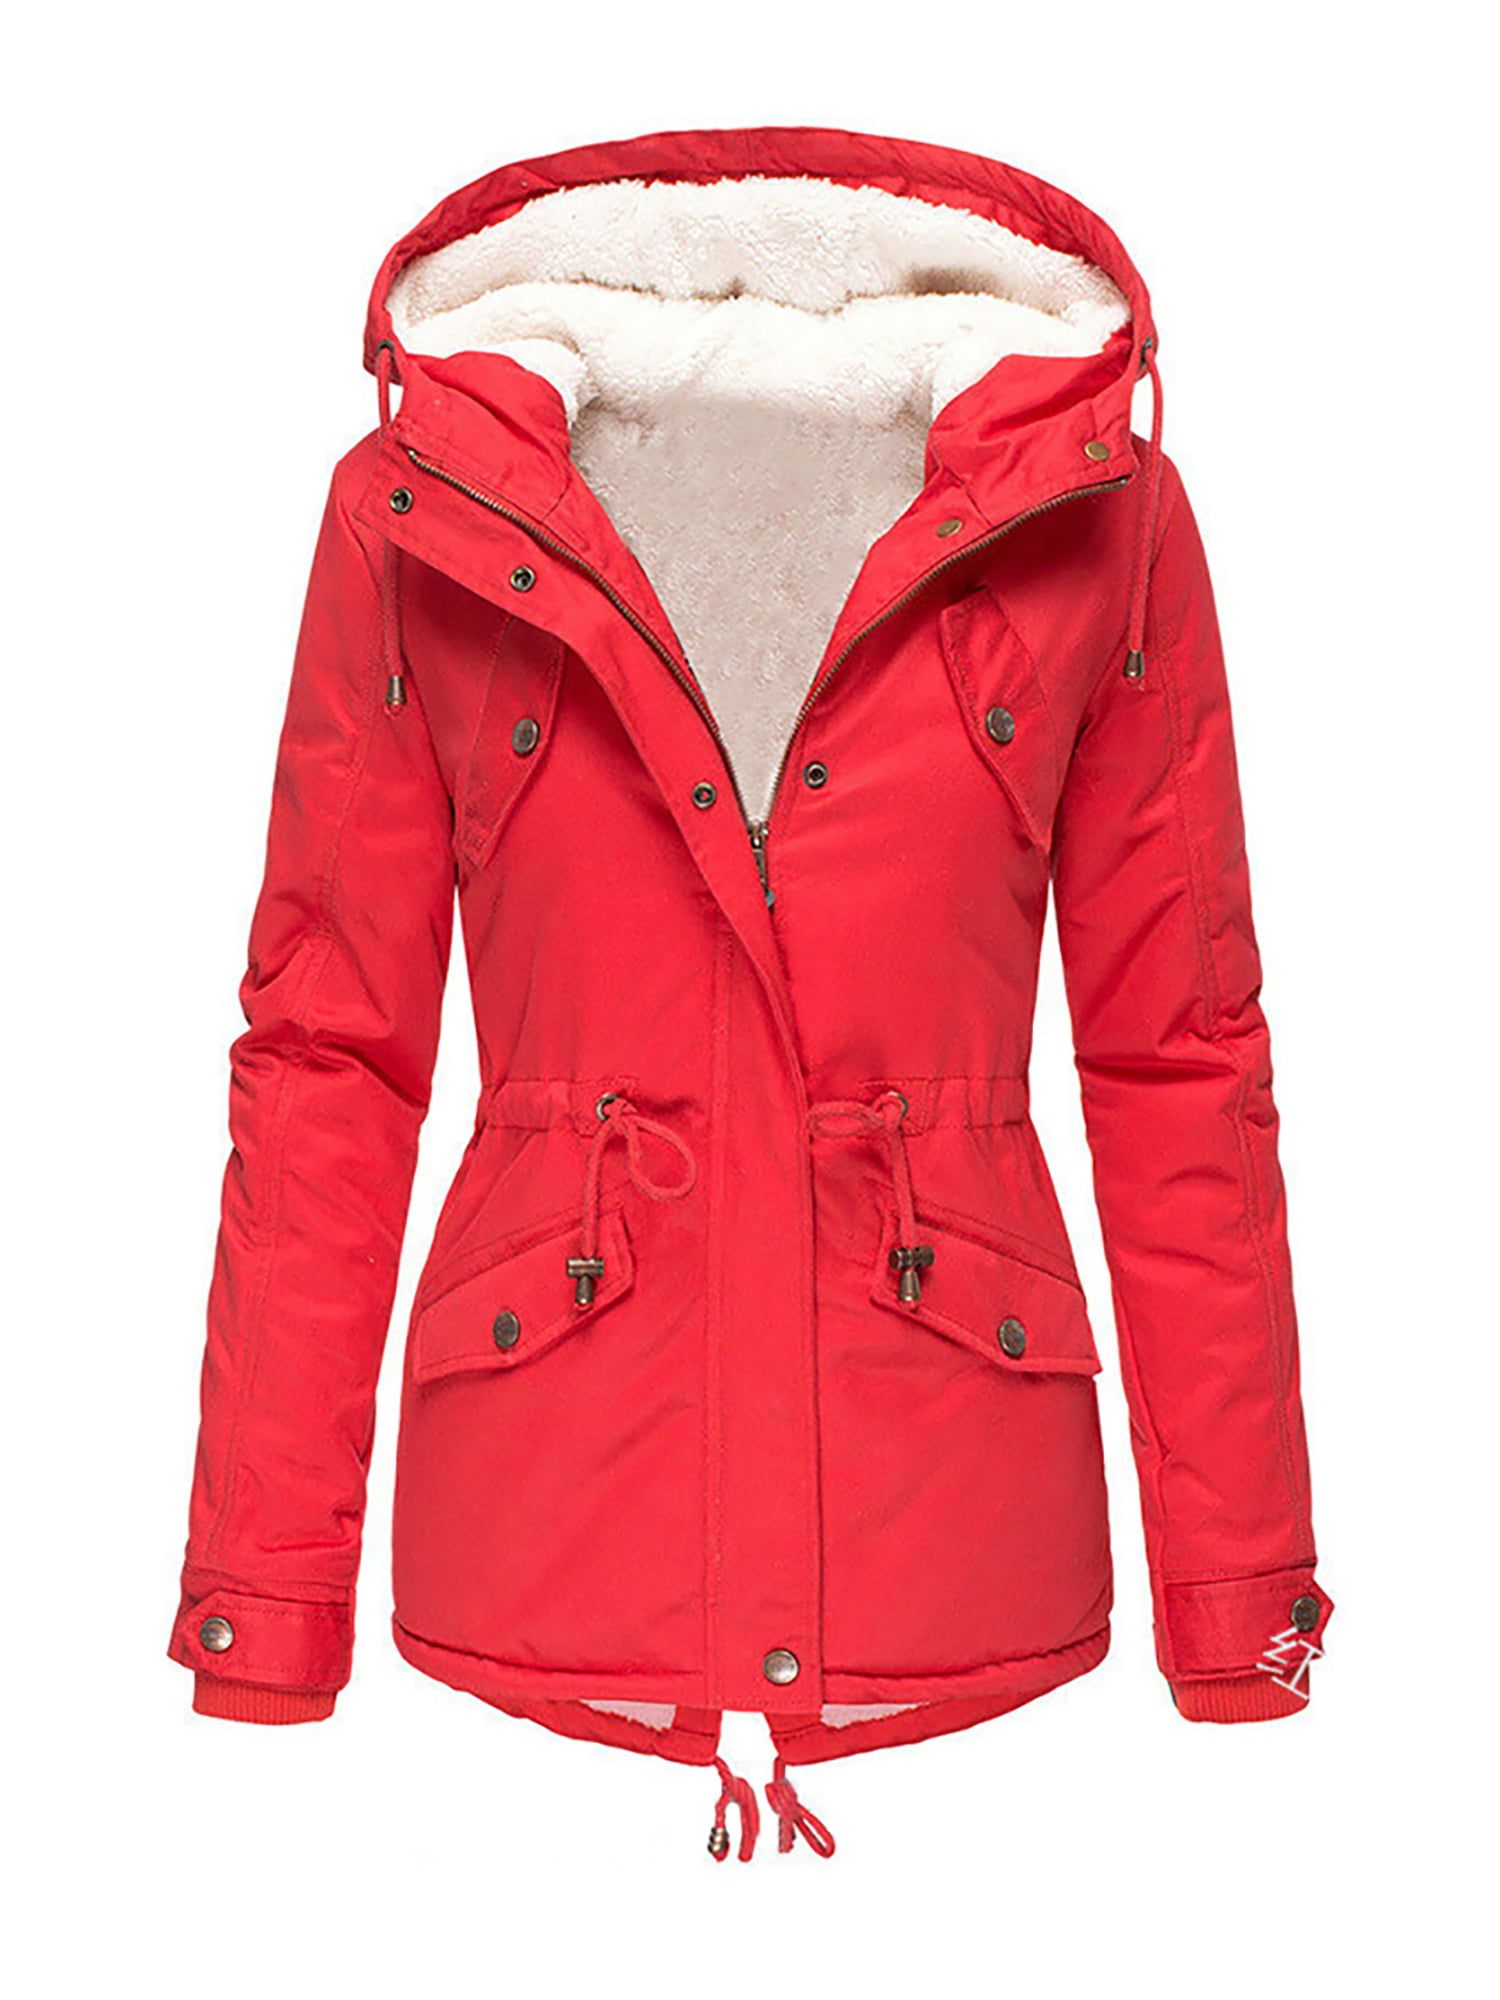 Women Fleece Coat Butterfly Print Zip Up Hooded Winter Warm Sherpa Lined Jacket Long Sleeve Plus Size Sweatshirt with Pocket